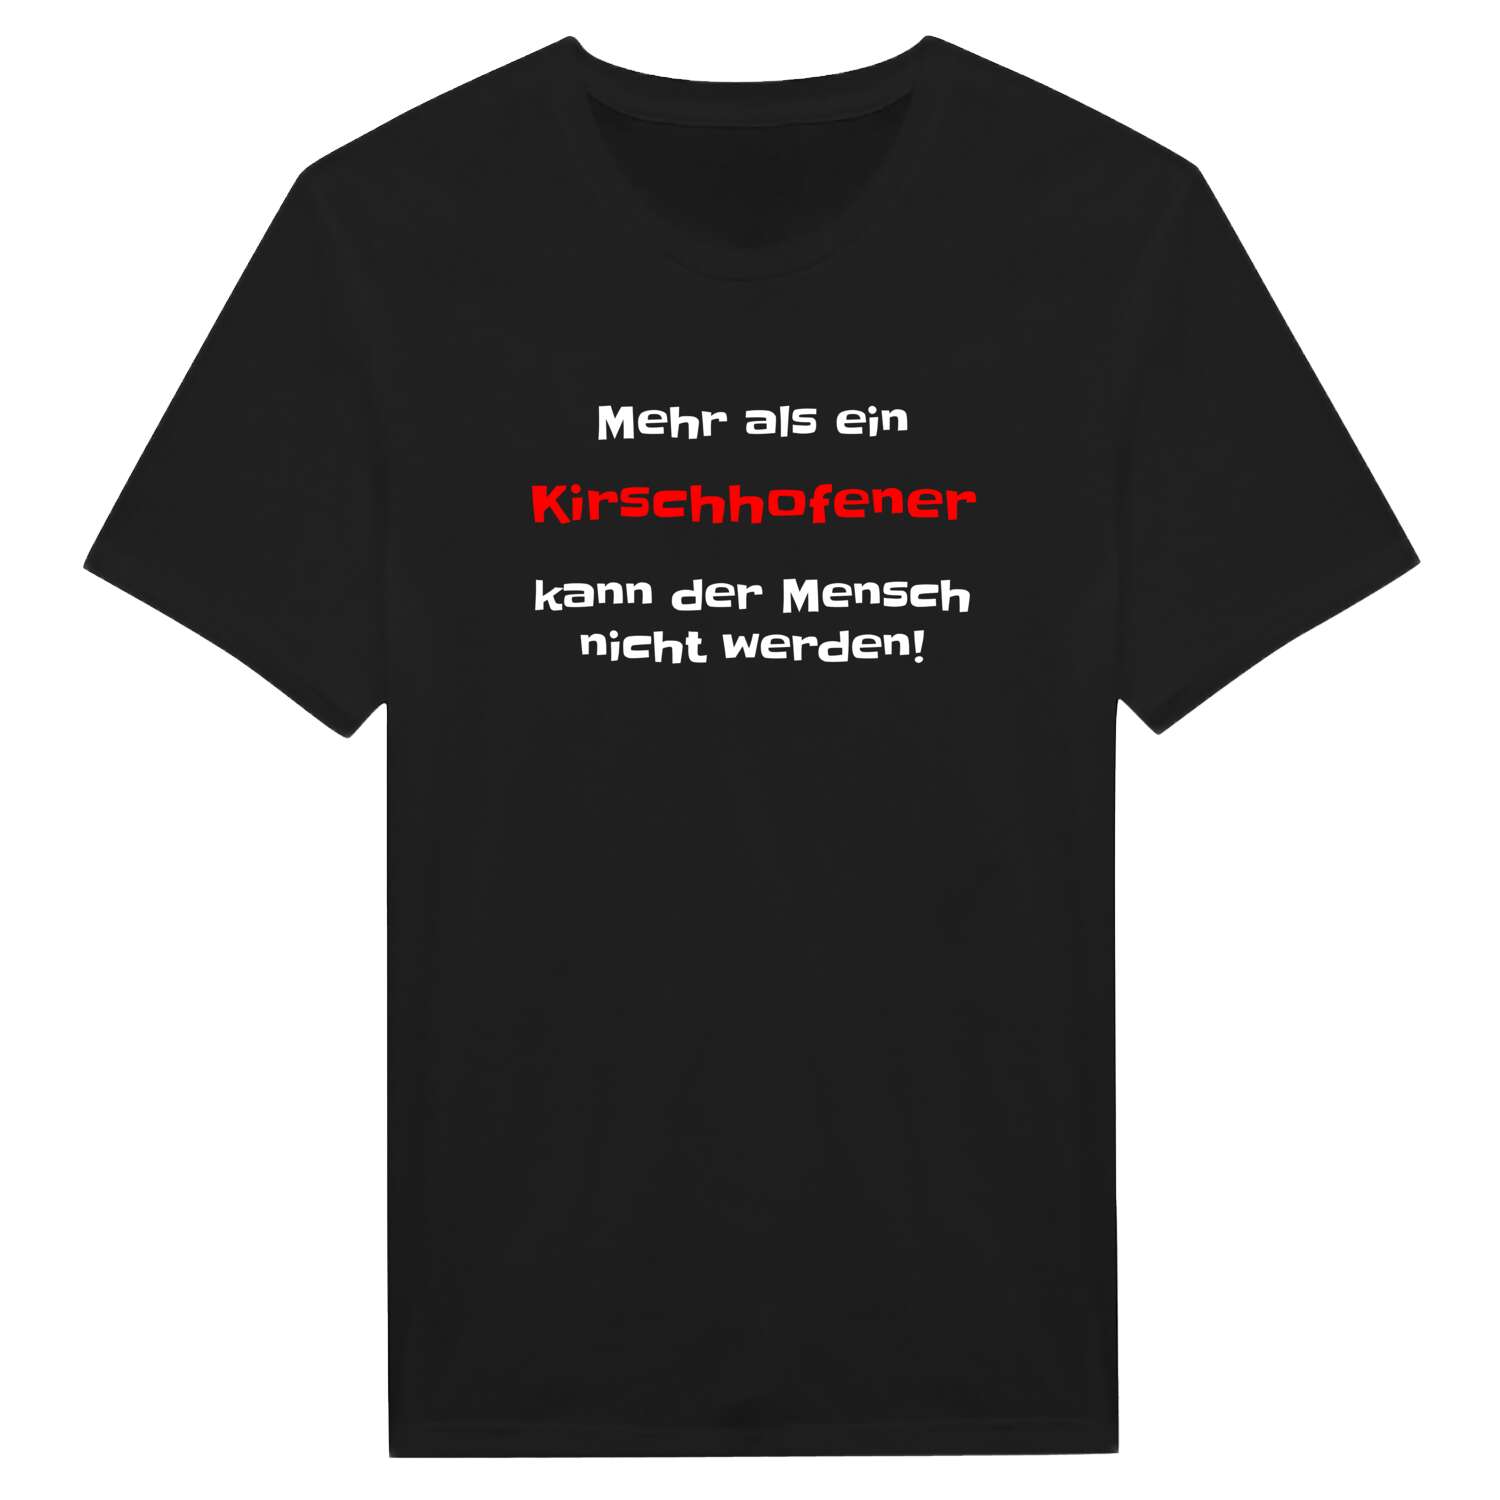 Kirschhofen T-Shirt »Mehr als ein«